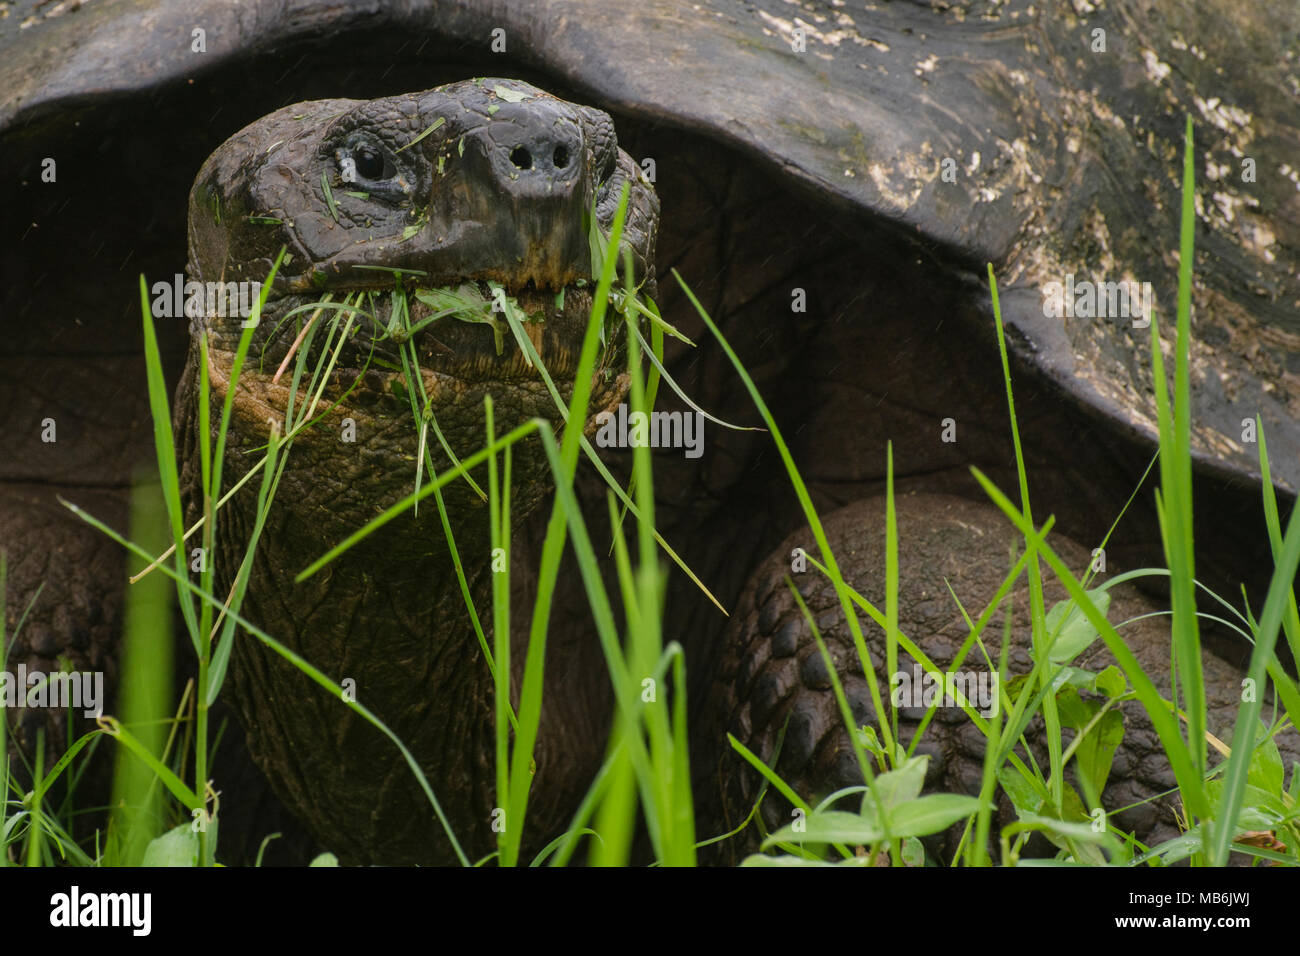 Eine Galapagos Riesenschildkröte (Chelonoidis nigra) auf Gras mampfen, diese Reptilien enorme Größen erreichen, ein Beispiel der Insel gigantismus. Stockfoto